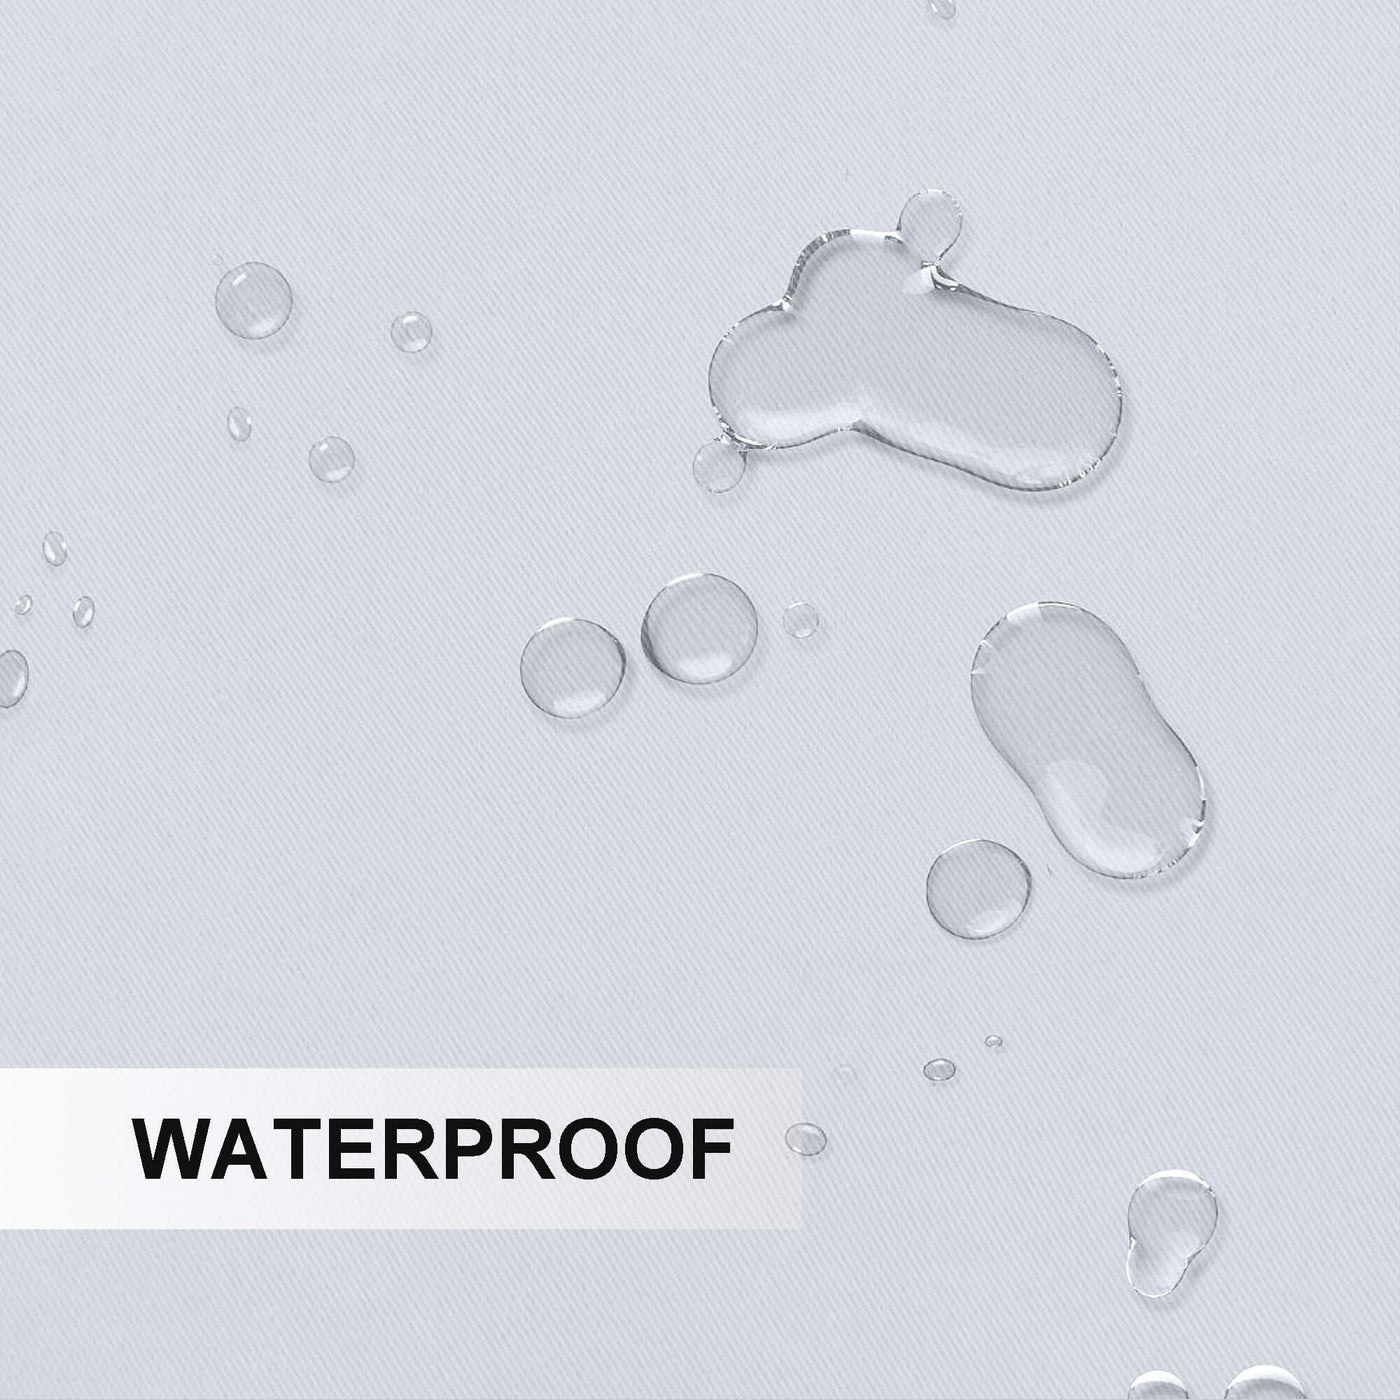 Waterproof Windproof Outdoor Curtains Top & Bottom Grommet 1 Panel